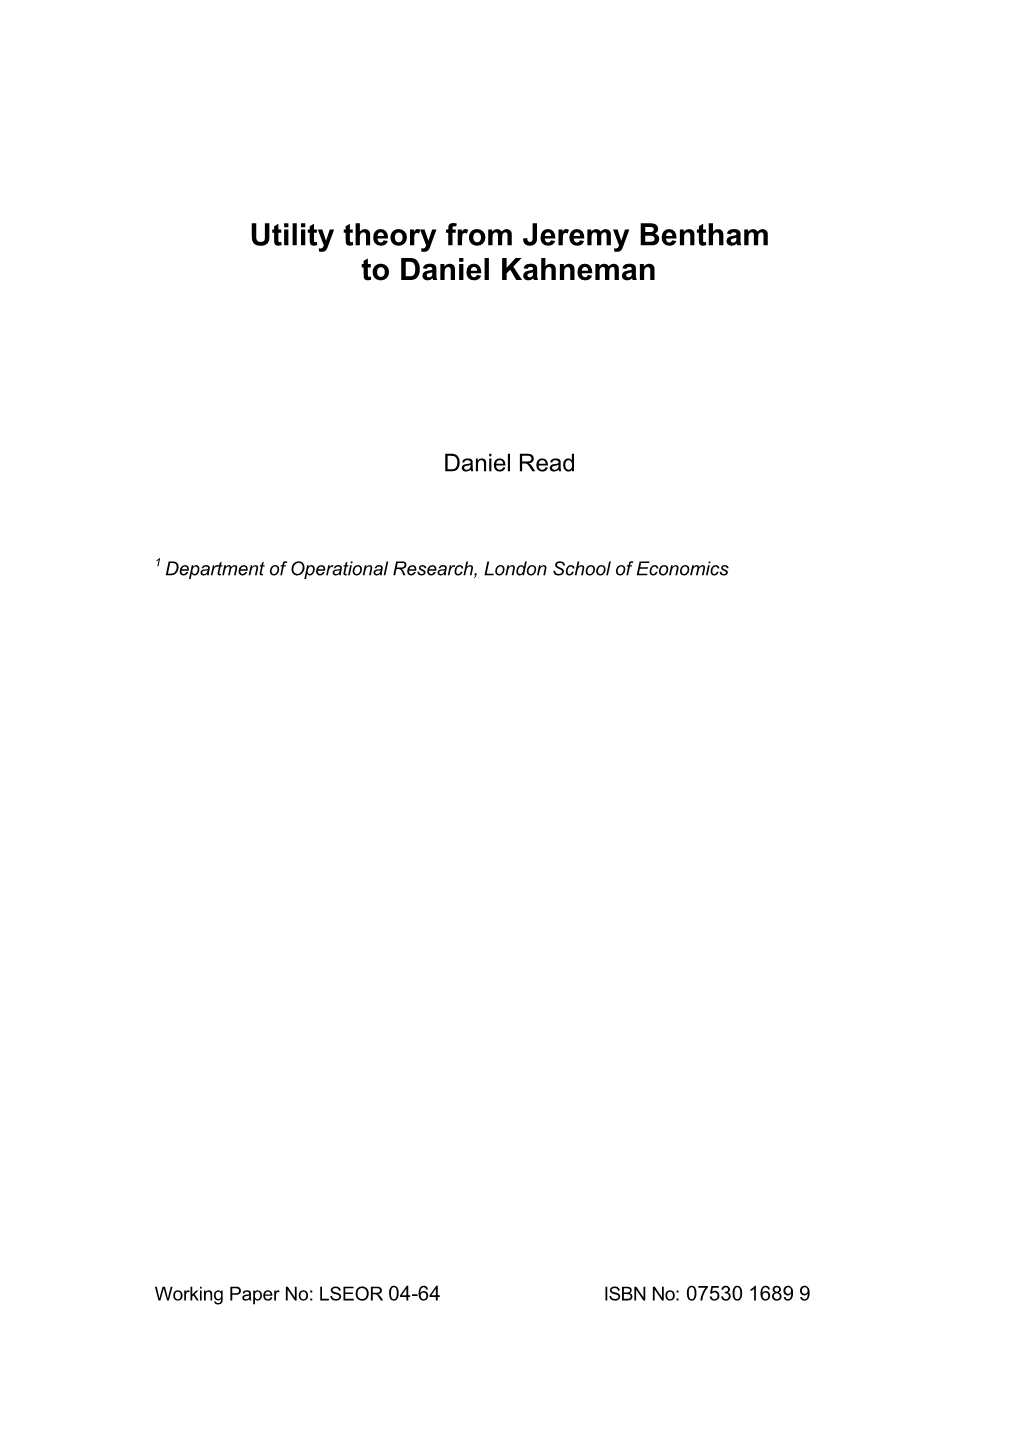 Utility Theory from Jeremy Bentham to Daniel Kahneman